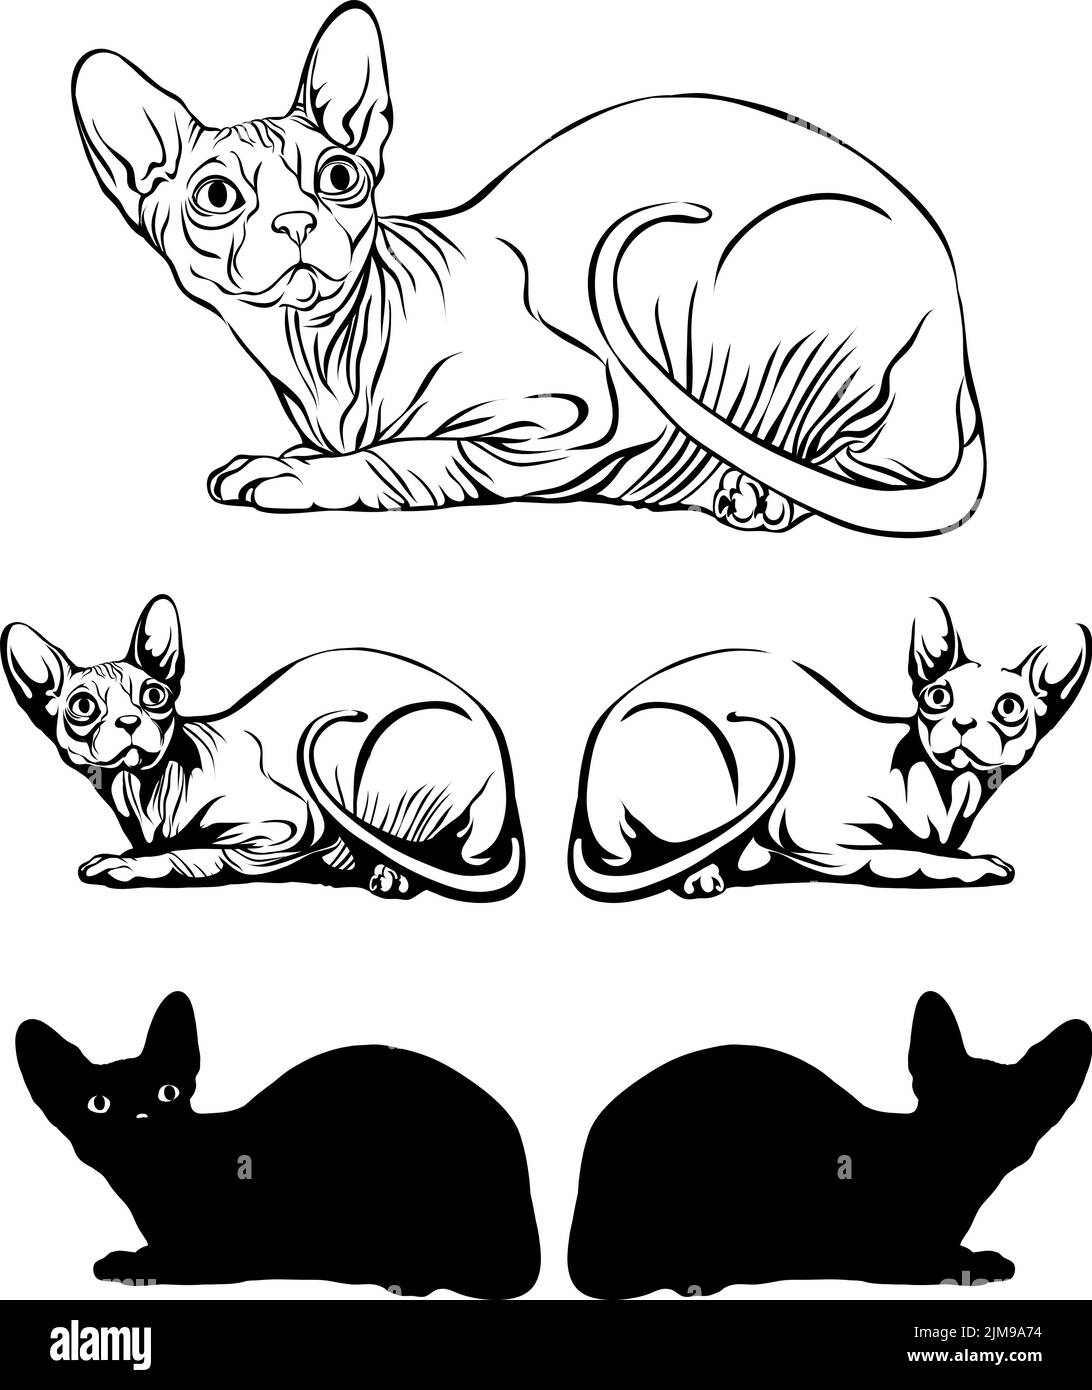 immagine di un gatto, immagine di gatto sfinge sdraiato, illustrazione, insieme, bianco, nero, isolato, semplice, icona, arte, simbolo, grafica, disegno Illustrazione Vettoriale